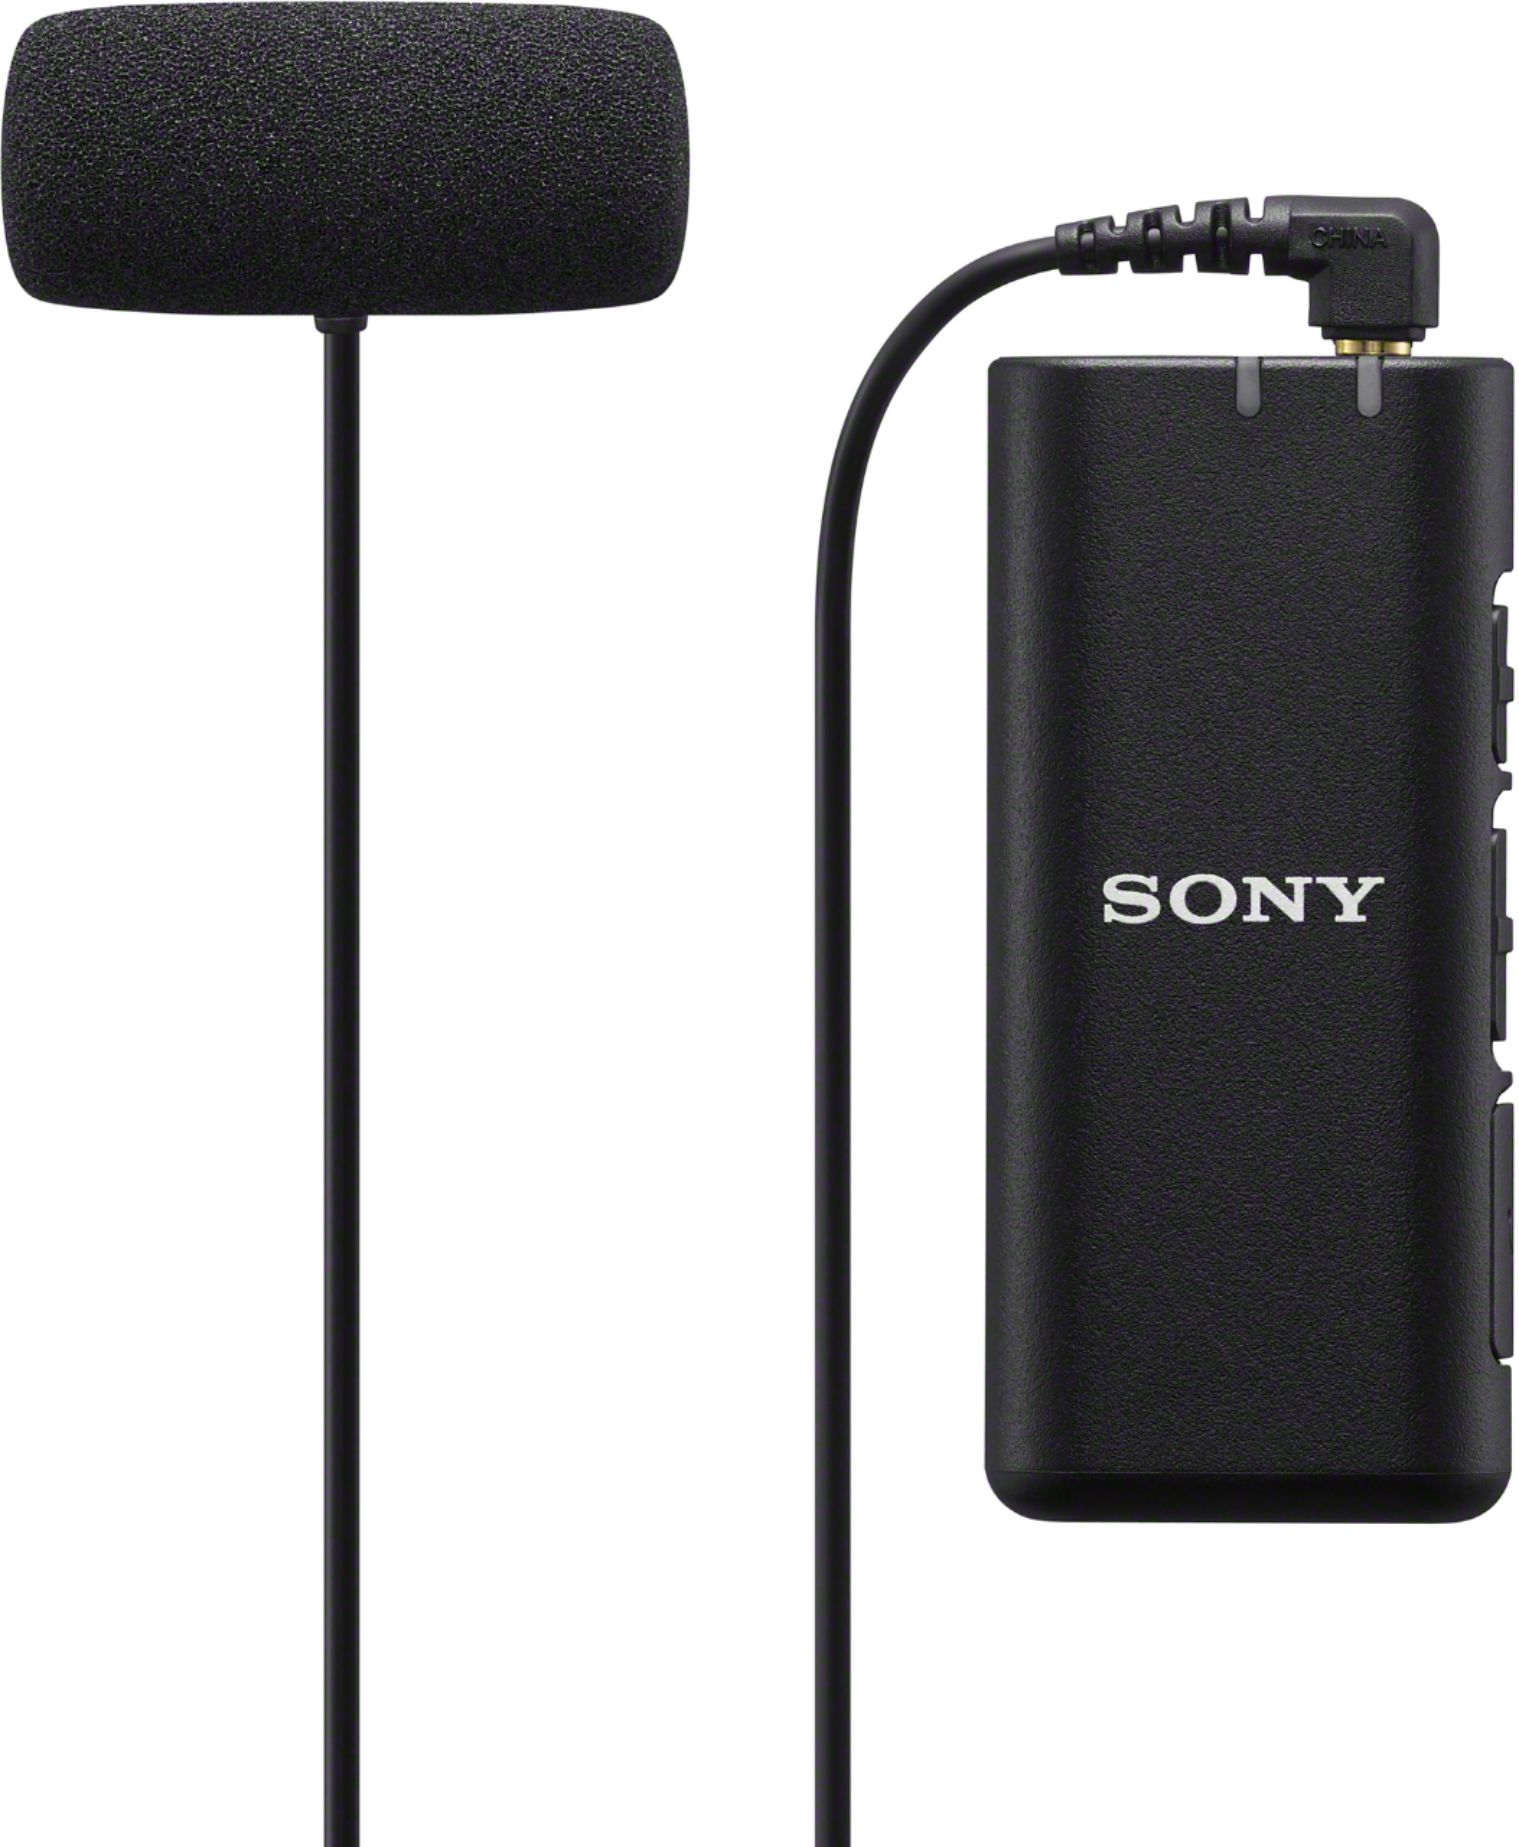 Sony Digital Bluetooth Wireless Microphone ECMW2BT - Buy